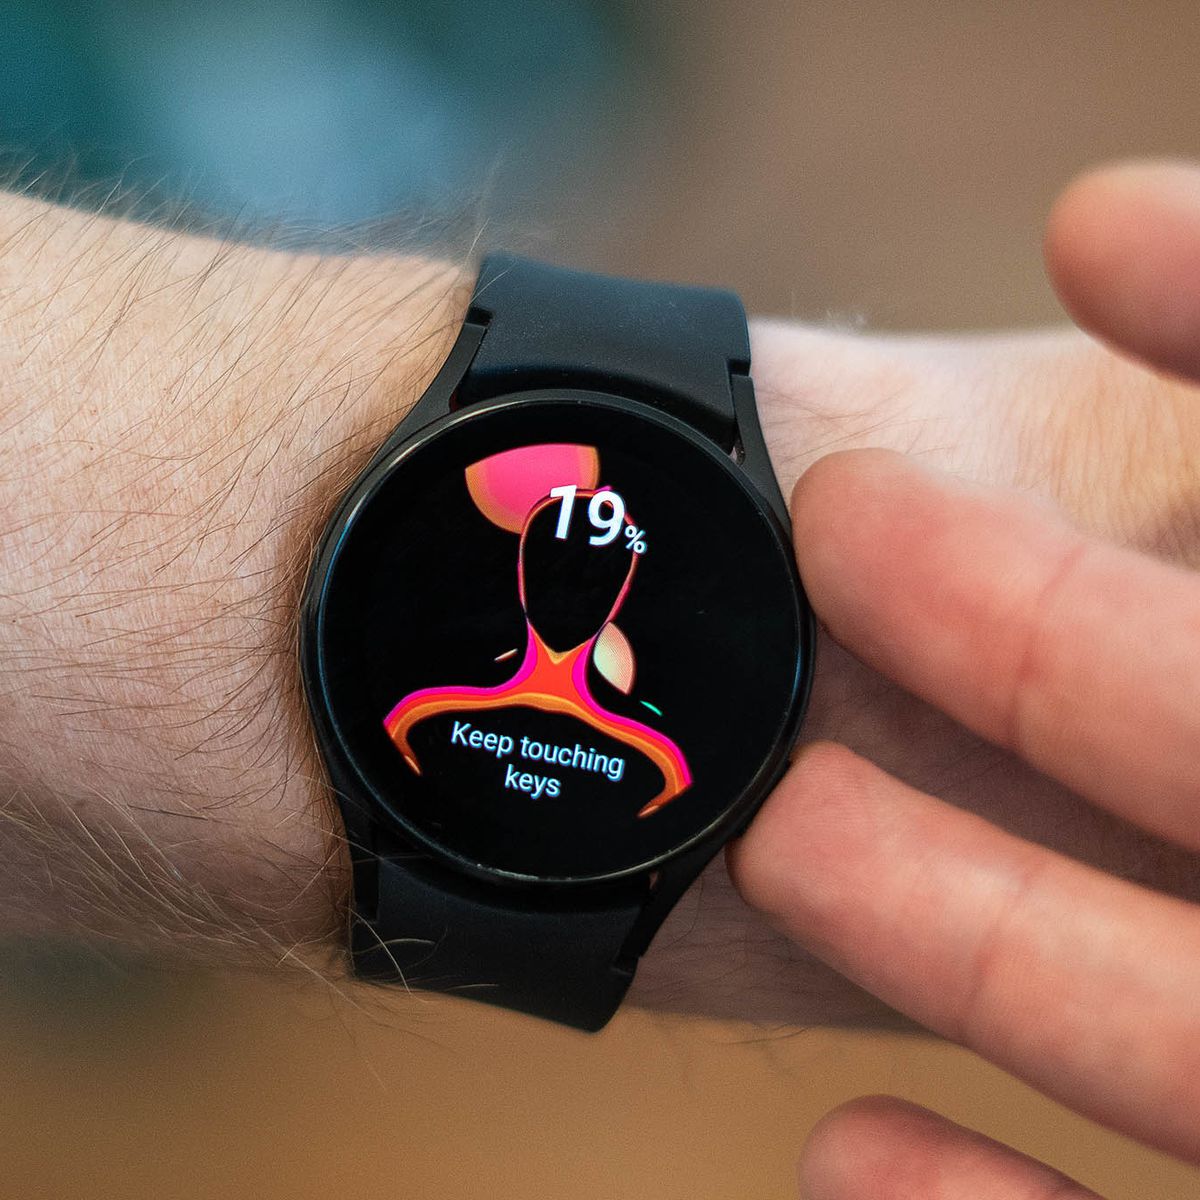 Galaxy Watch 4 ha un sensore per misurare la percentuale di grasso corporeo